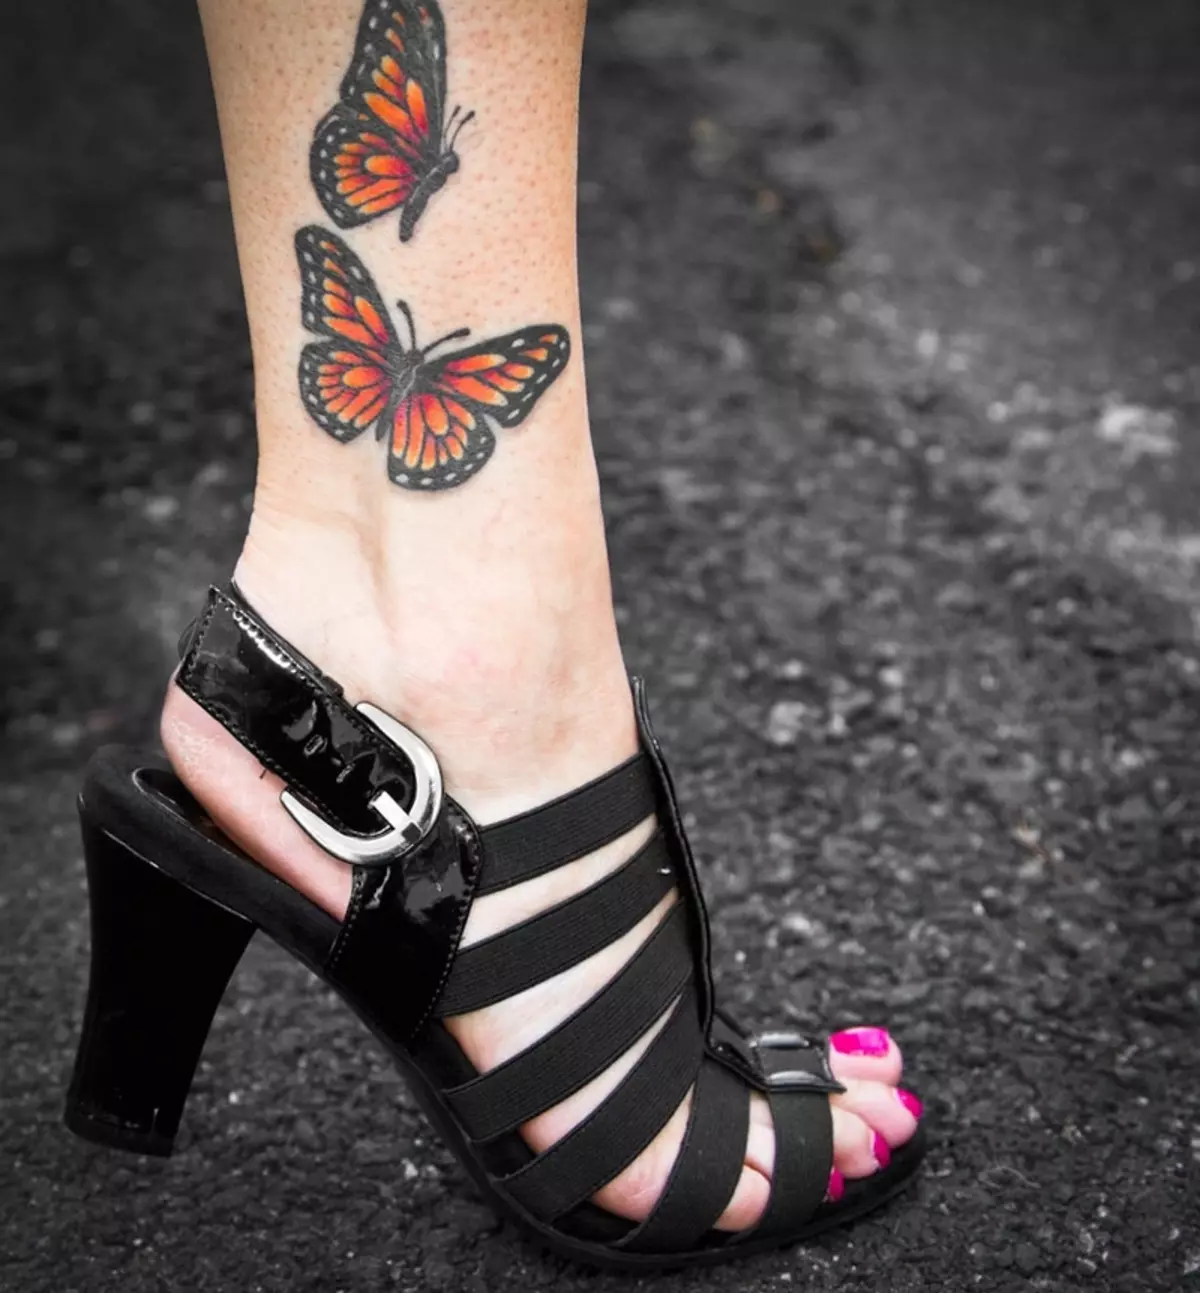 Butterfly este un simbol al libertății și independenței